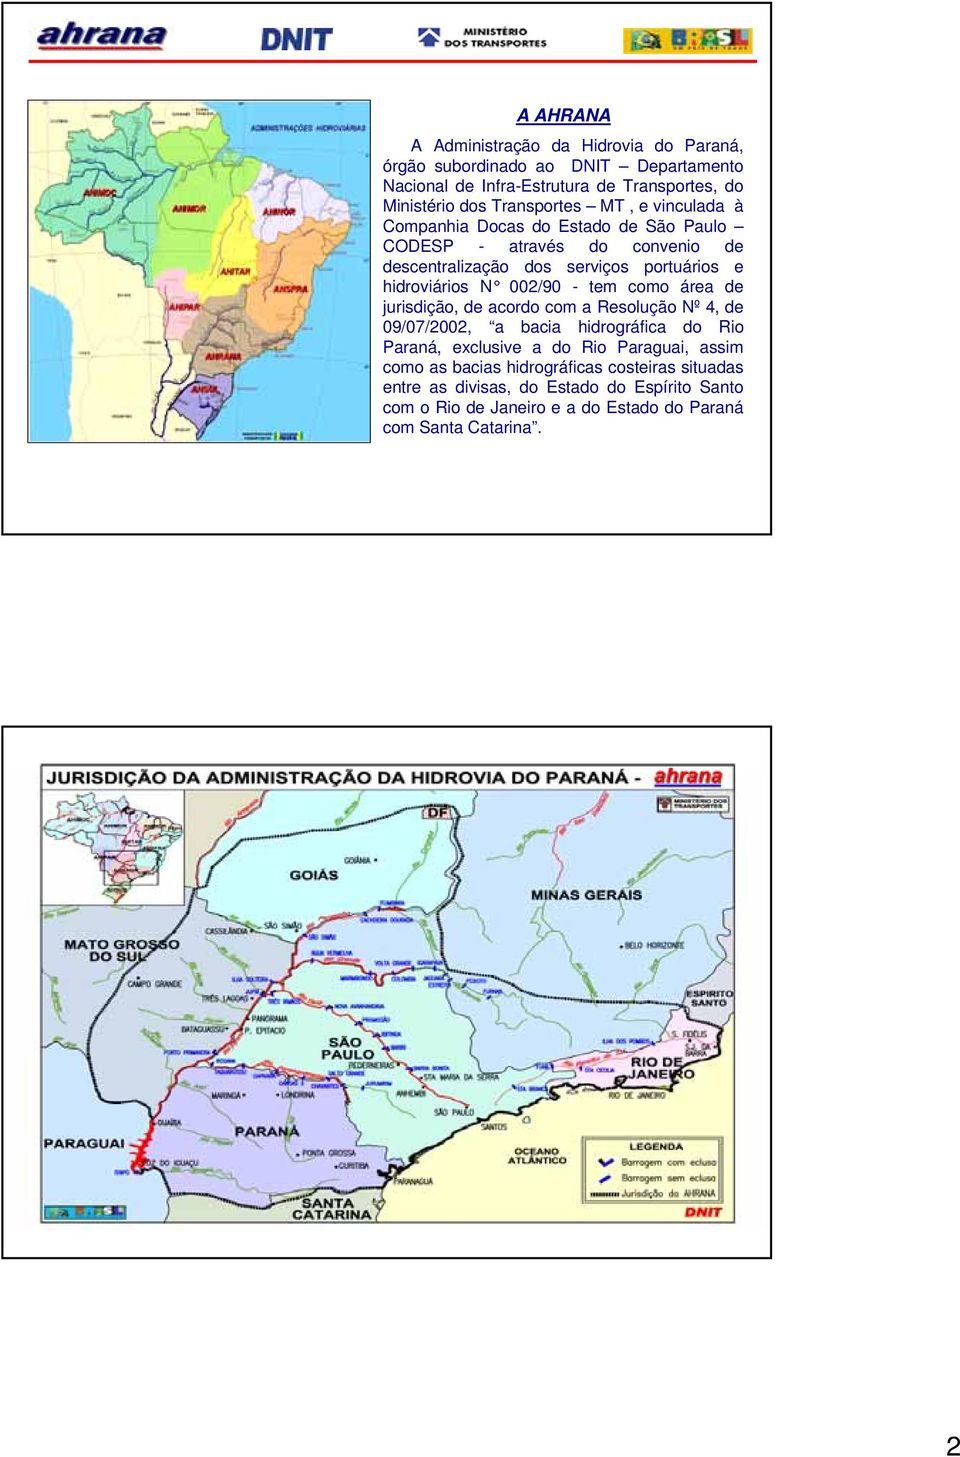 hidroviários N 002/90 - tem como área de jurisdição, de acordo com a Resolução Nº 4, de 09/07/2002, a bacia hidrográfica do Rio Paraná, exclusive a do Rio